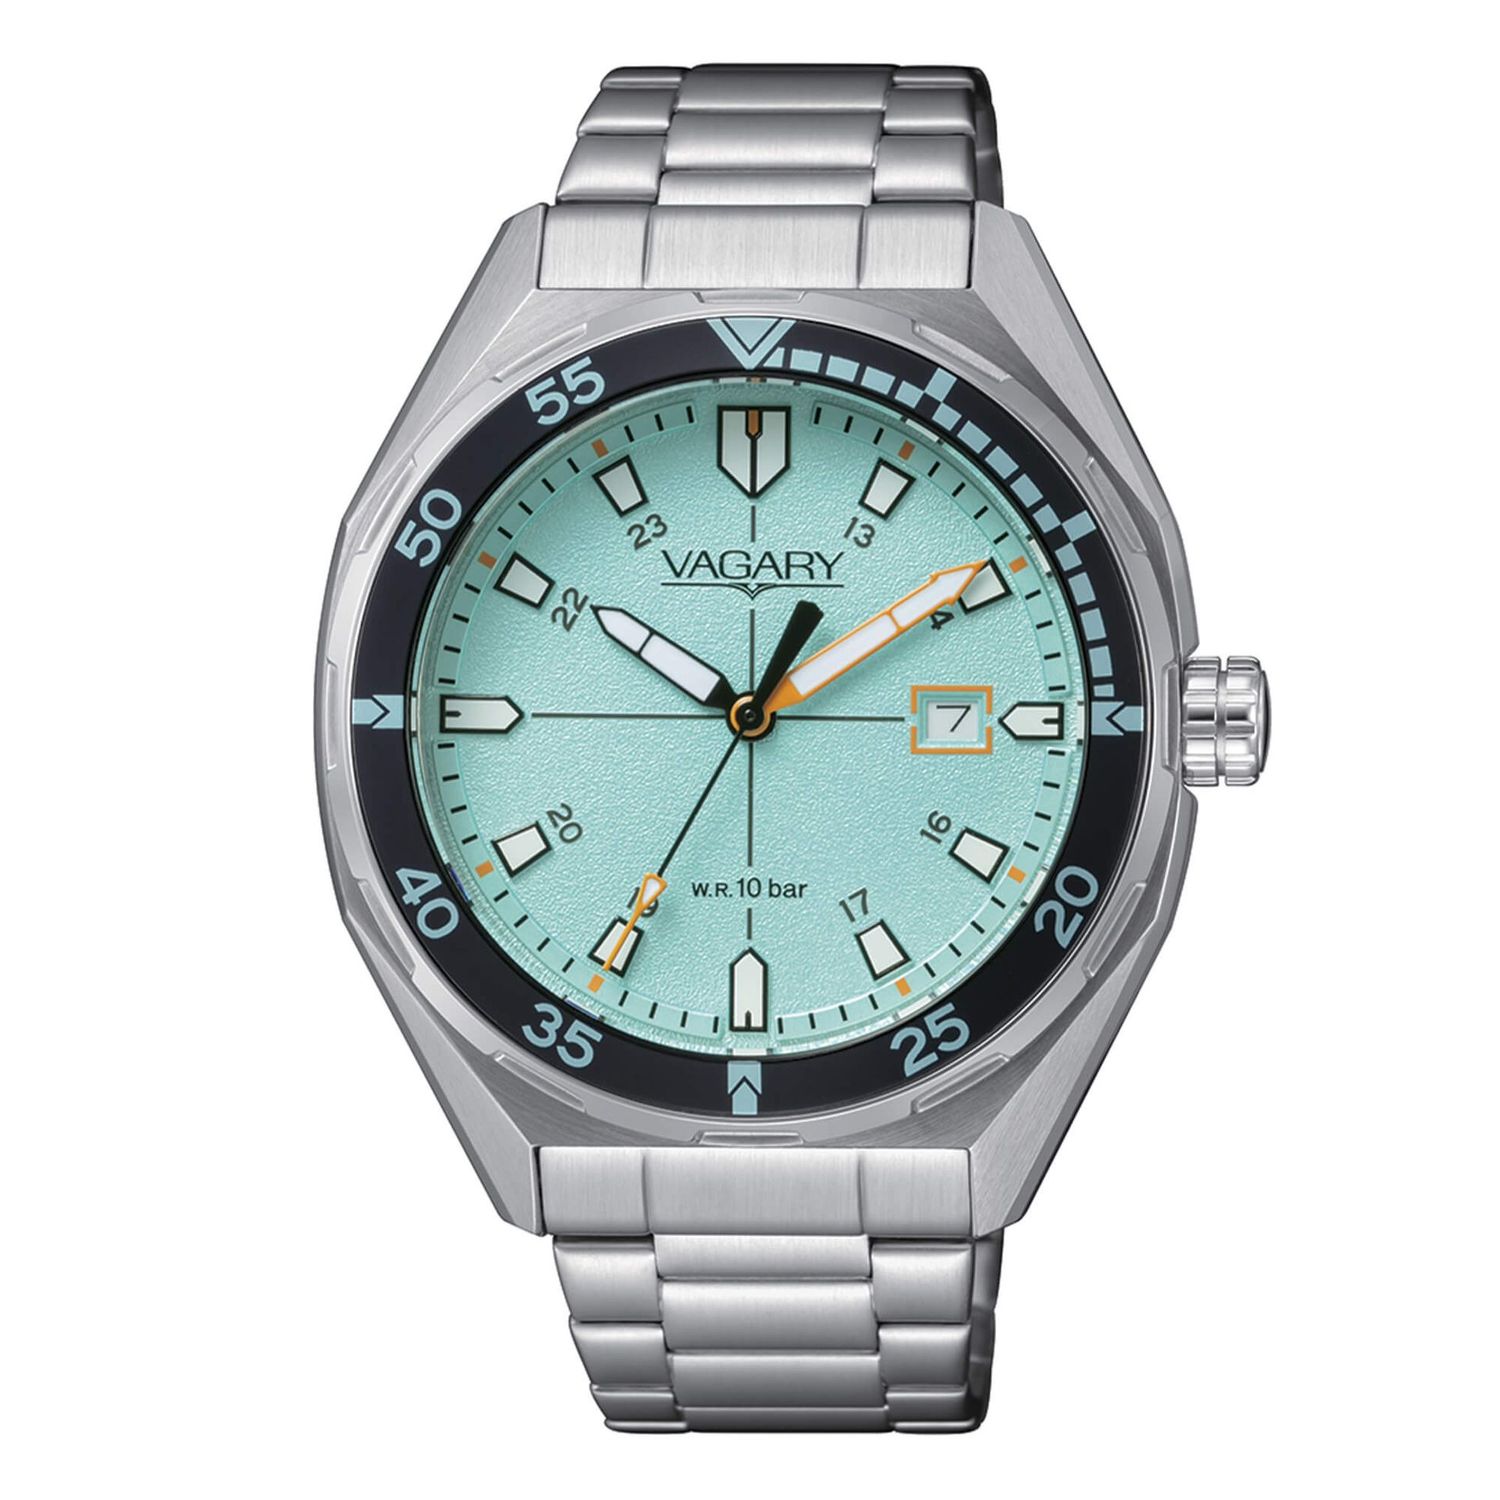 Vagary IB9-417-73 Aqua39 117th orologio per uomo